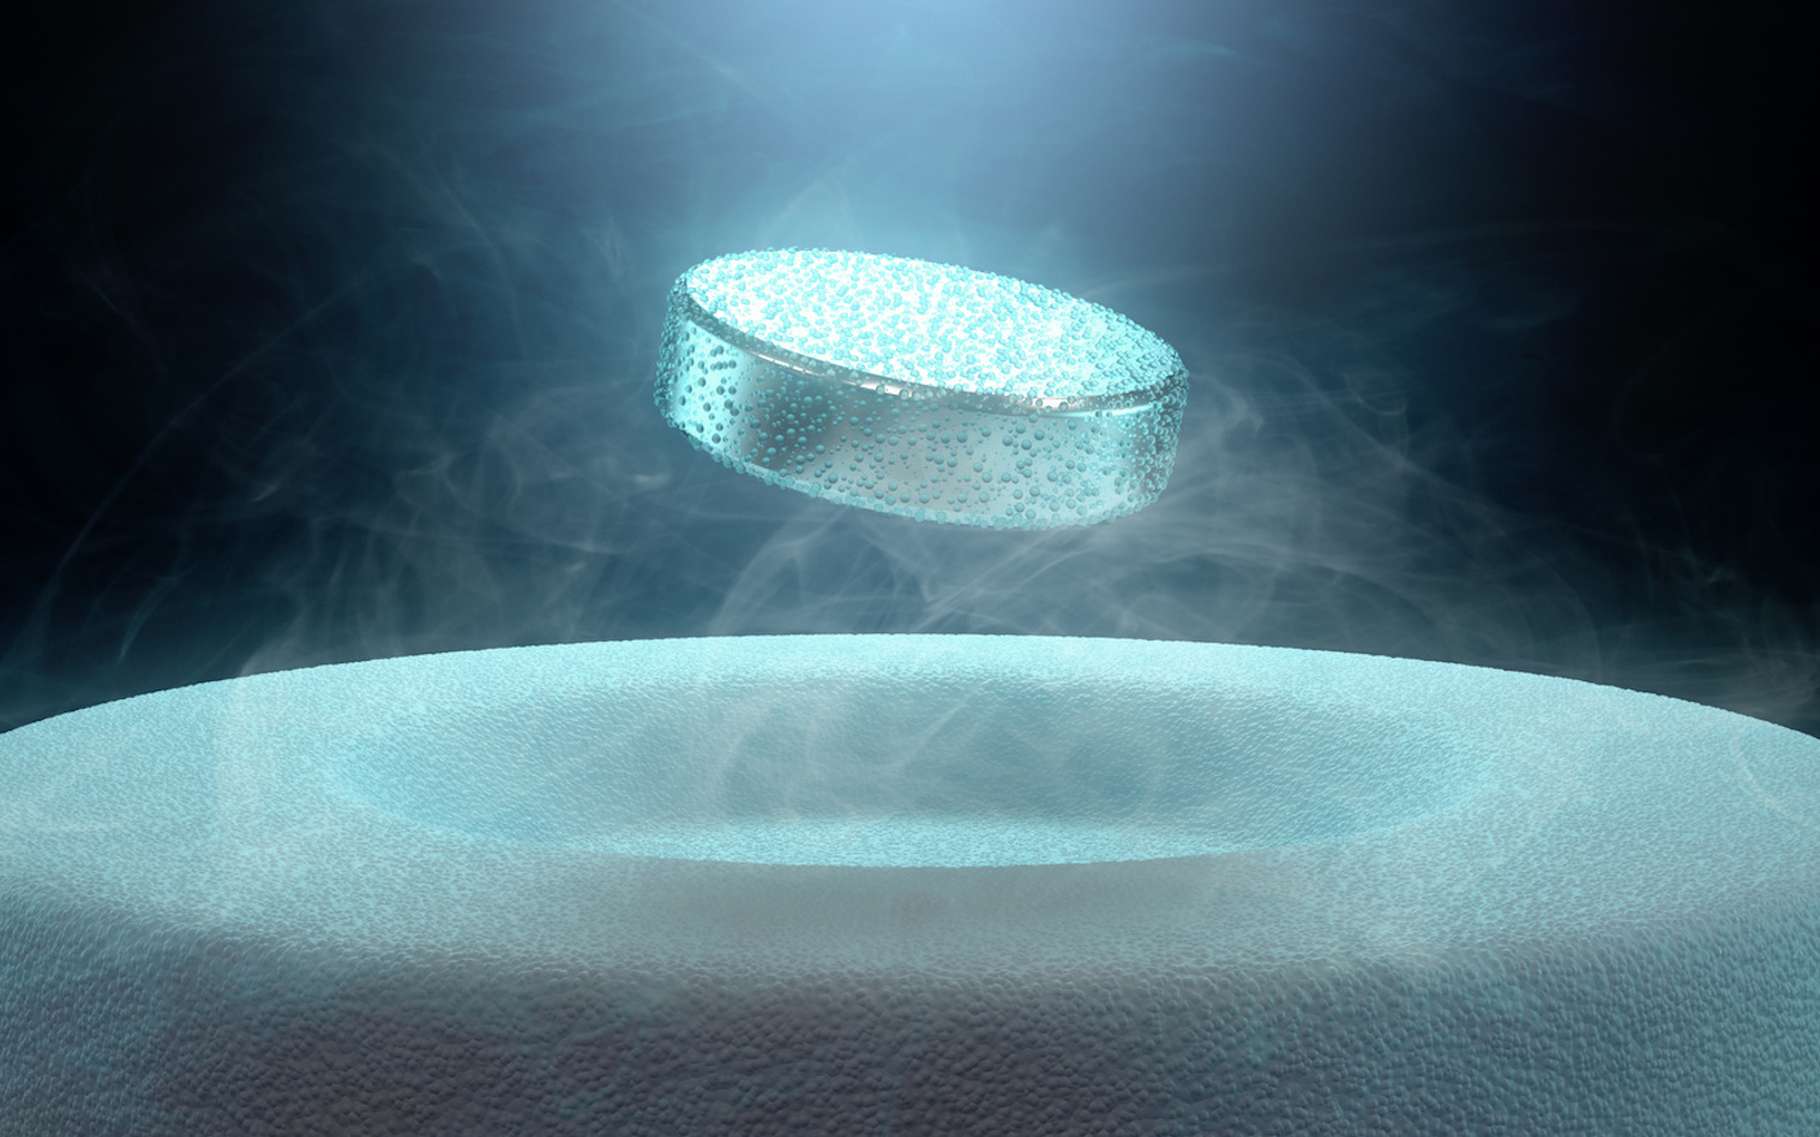 C’est grâce à l’effet Meissner qu’un supraconducteur peut léviter dans un champ magnétique. ©, Pixabay, DP